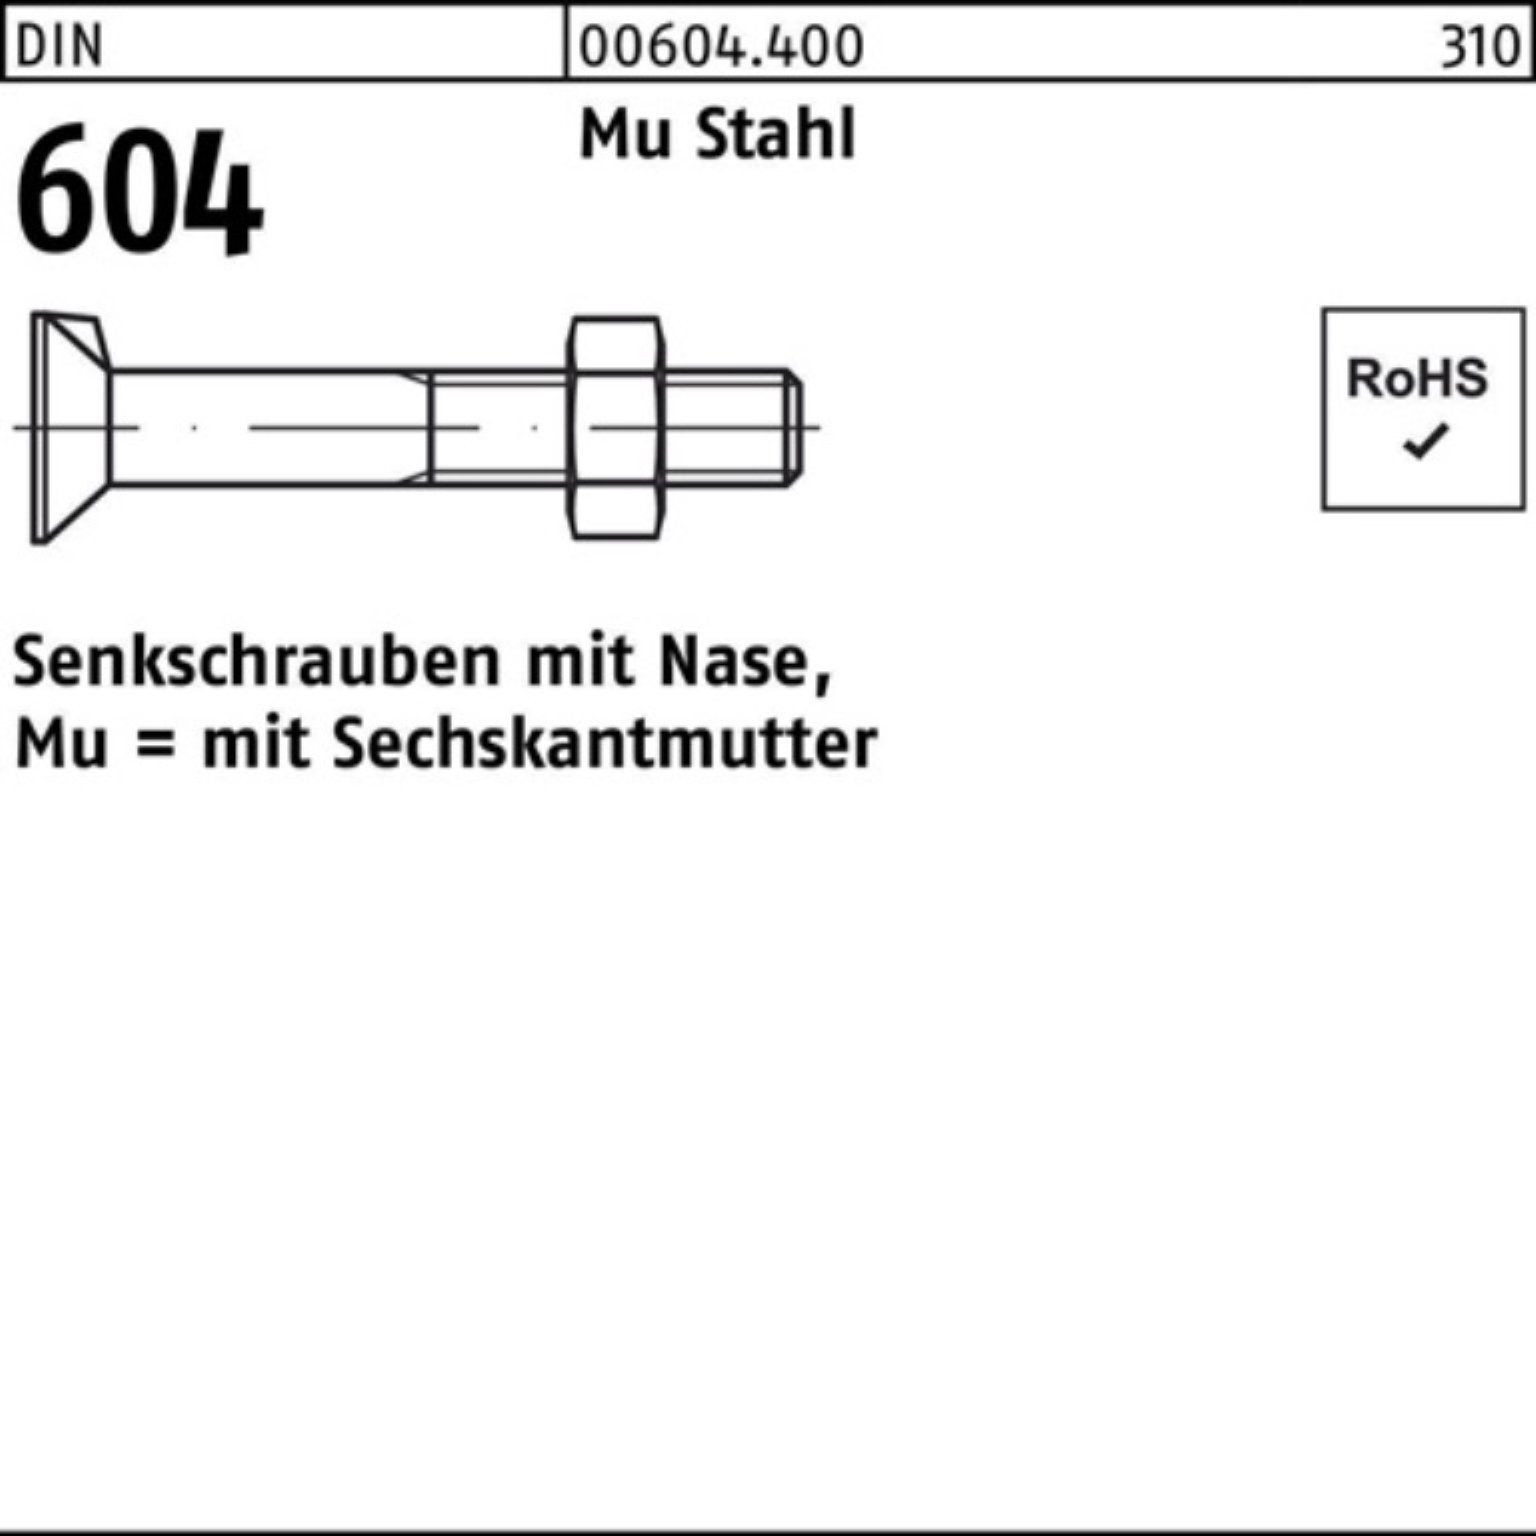 Reyher Senkschraube 200er Pack Senkschraube DIN 604 Nase/6-ktmutter M8x 35 Mu Stahl 4.6 20